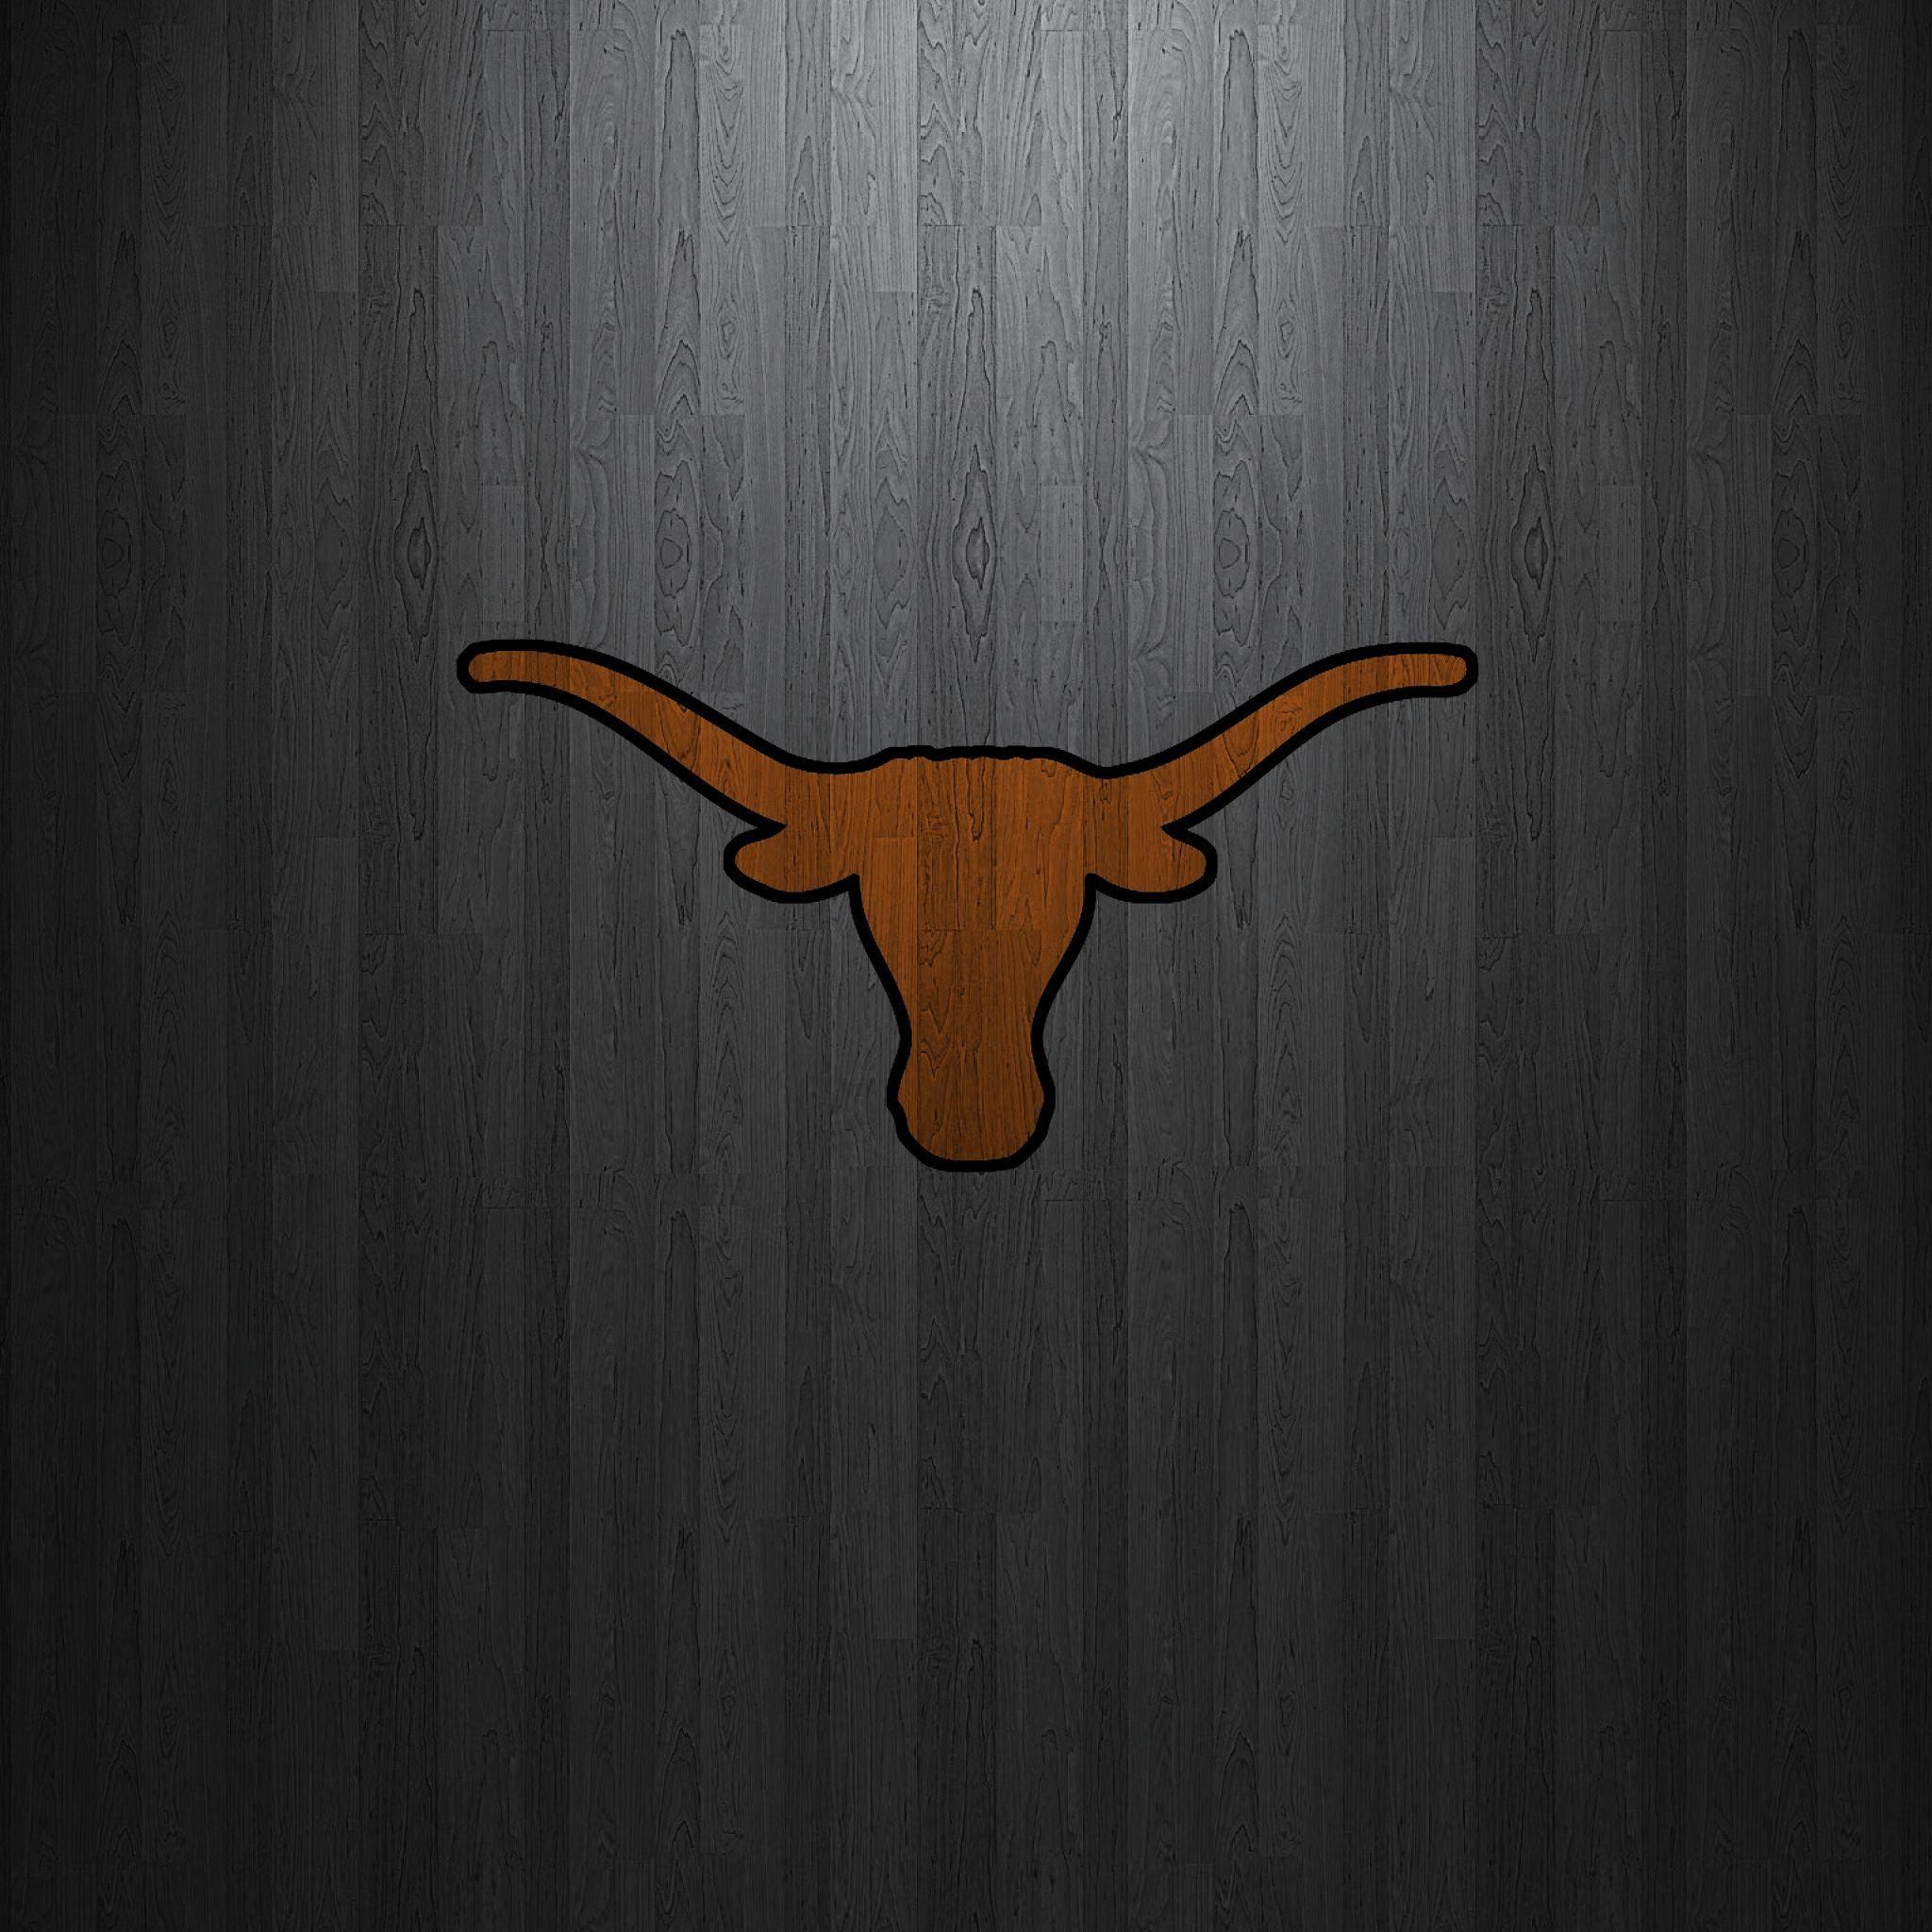 UT Longhorns Mobile Wallpaper by texasOB1 on DeviantArt